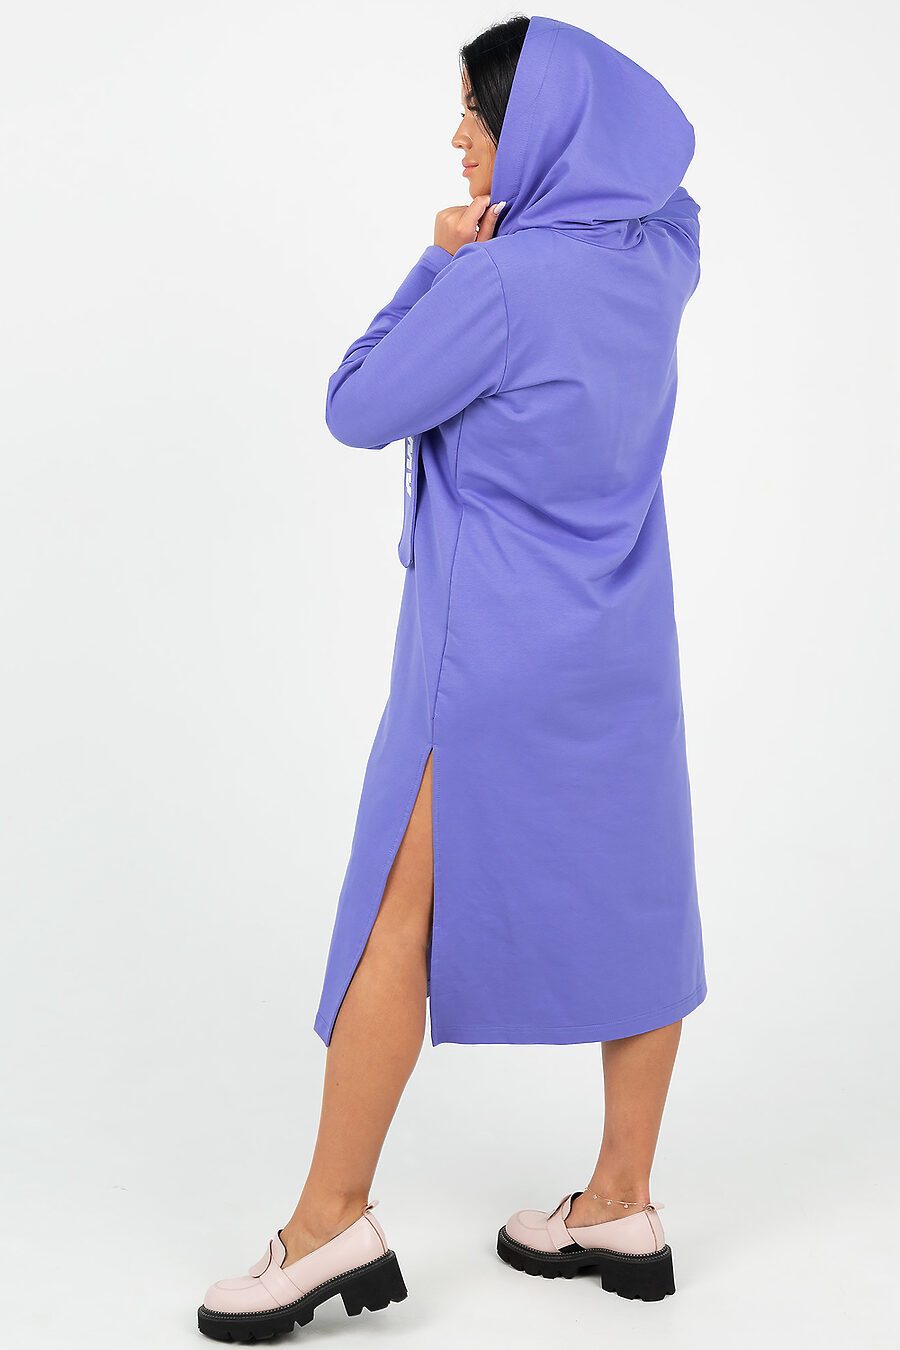 Платье Гледис для женщин НАТАЛИ 807744 купить оптом от производителя. Совместная покупка женской одежды в OptMoyo